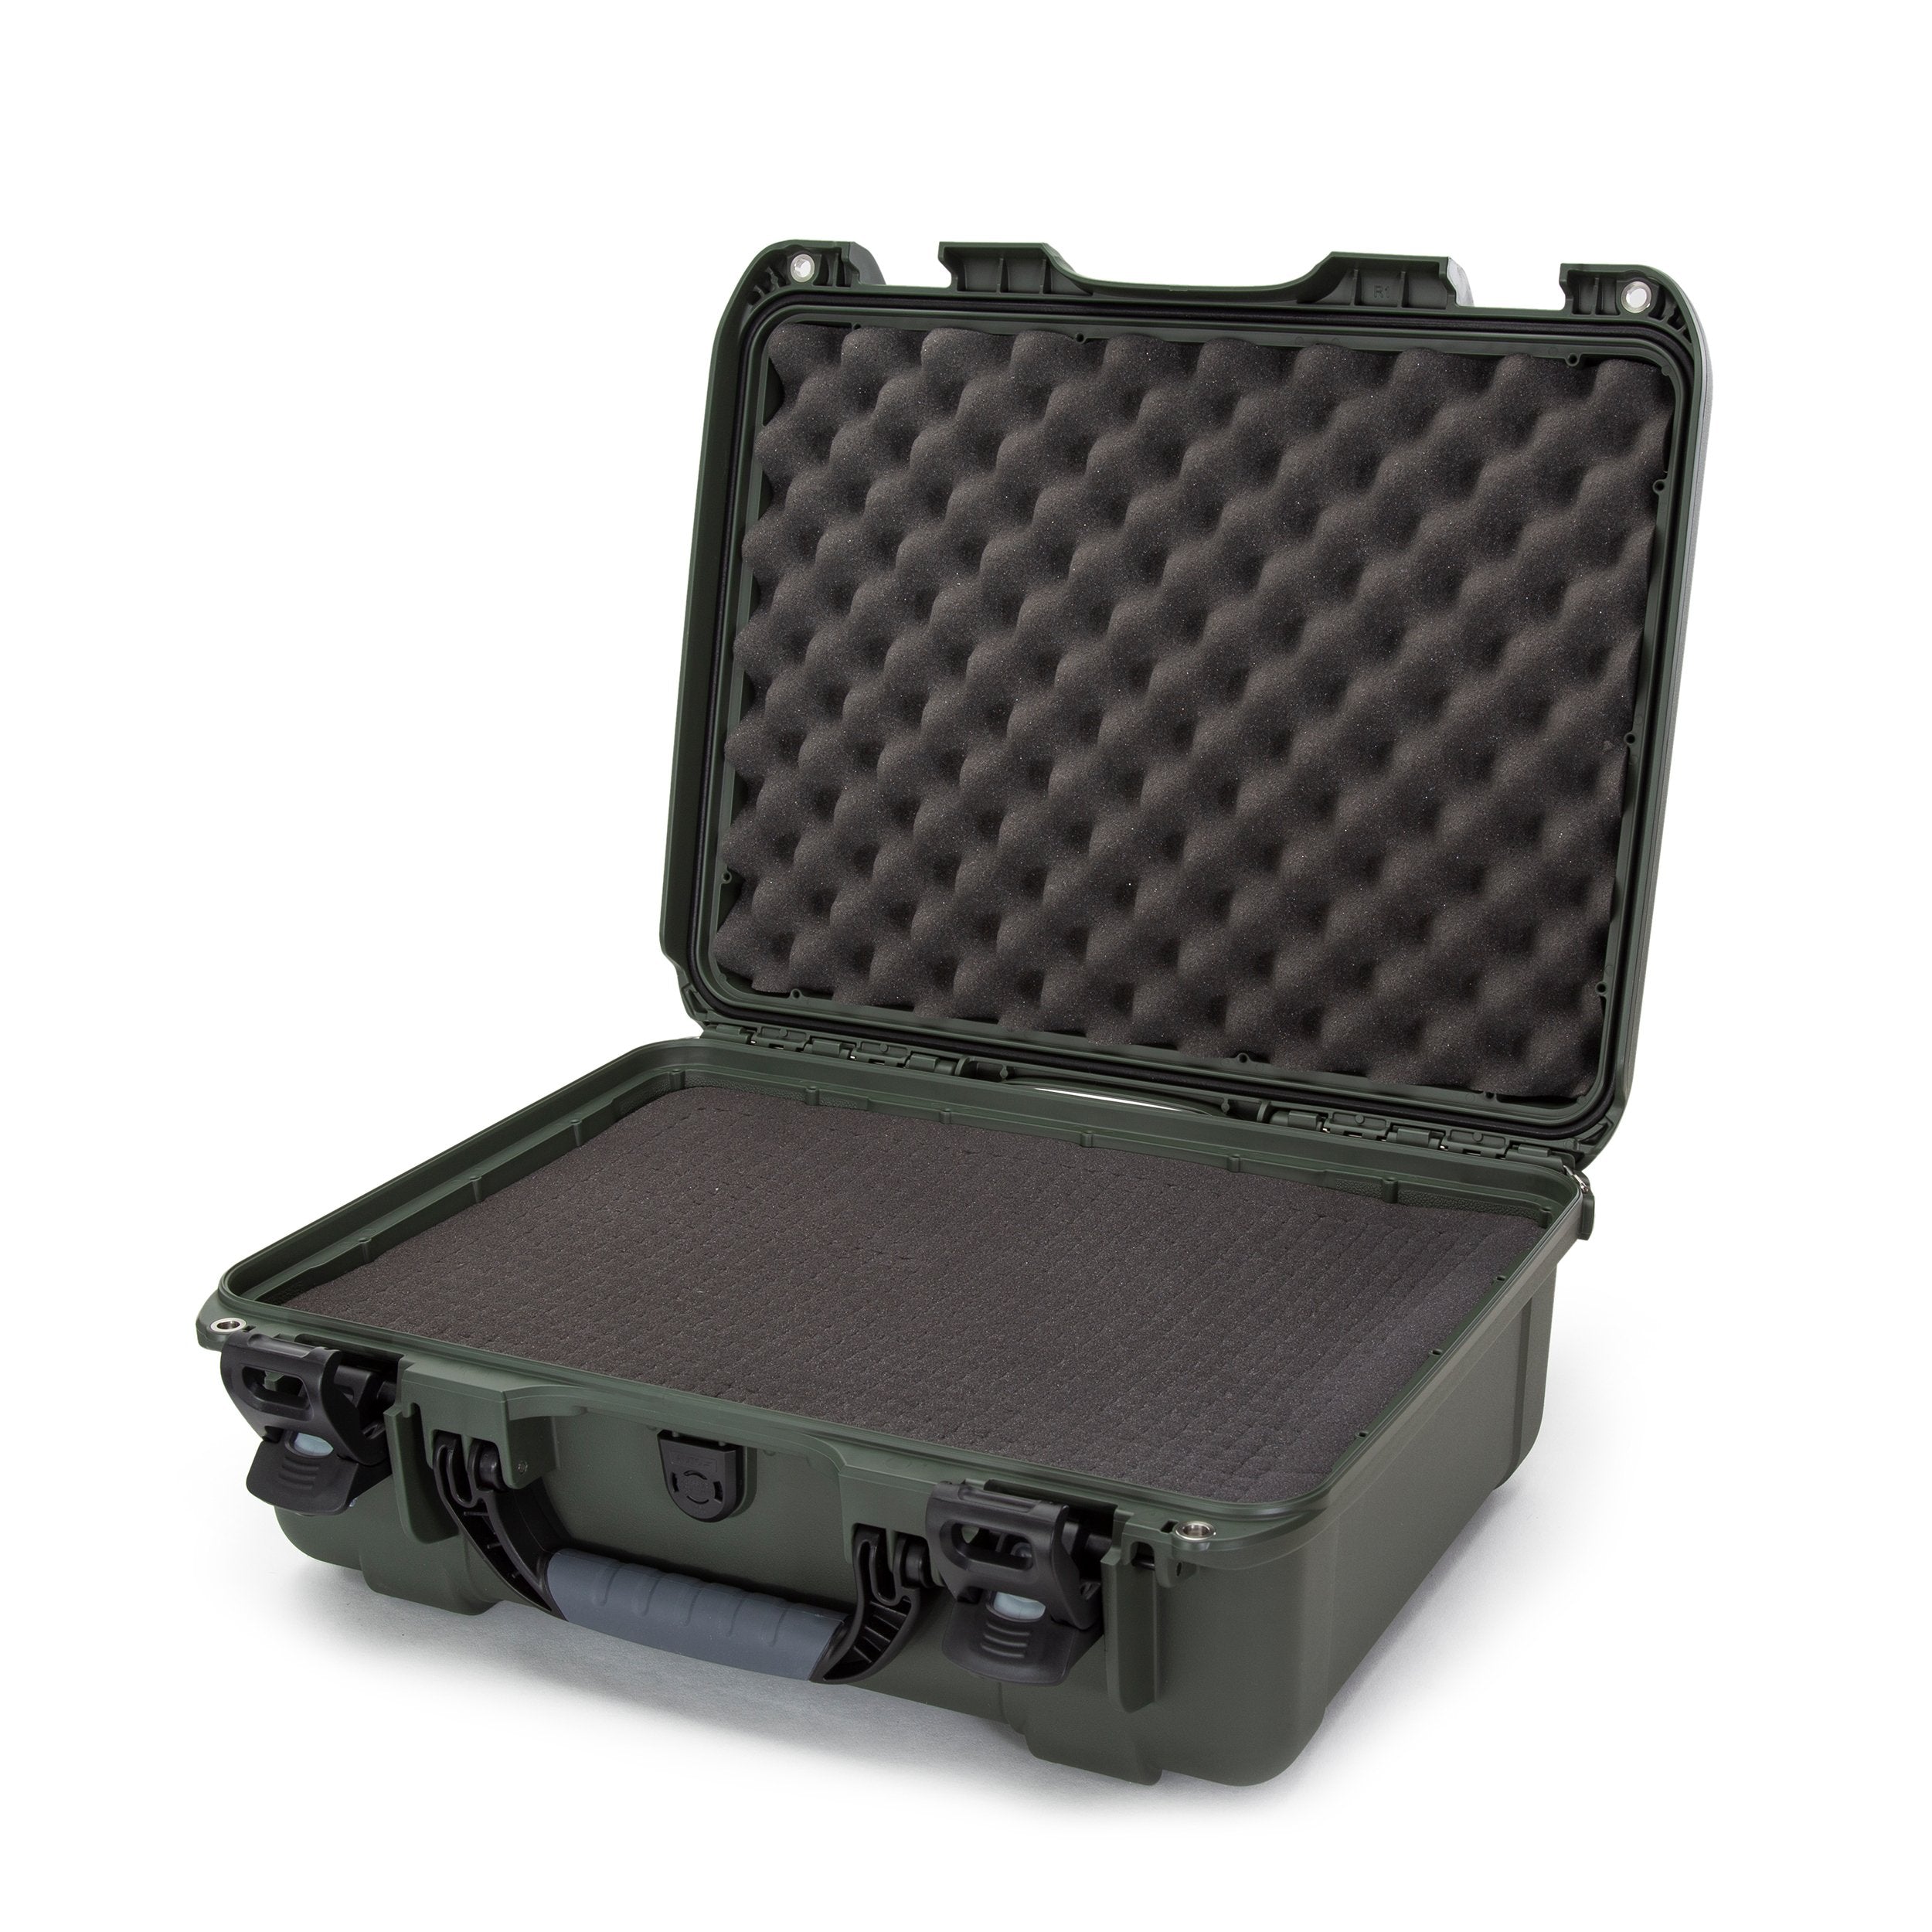 Nanuk 930 Waterproof Hard Case with Foam Insert - Olive